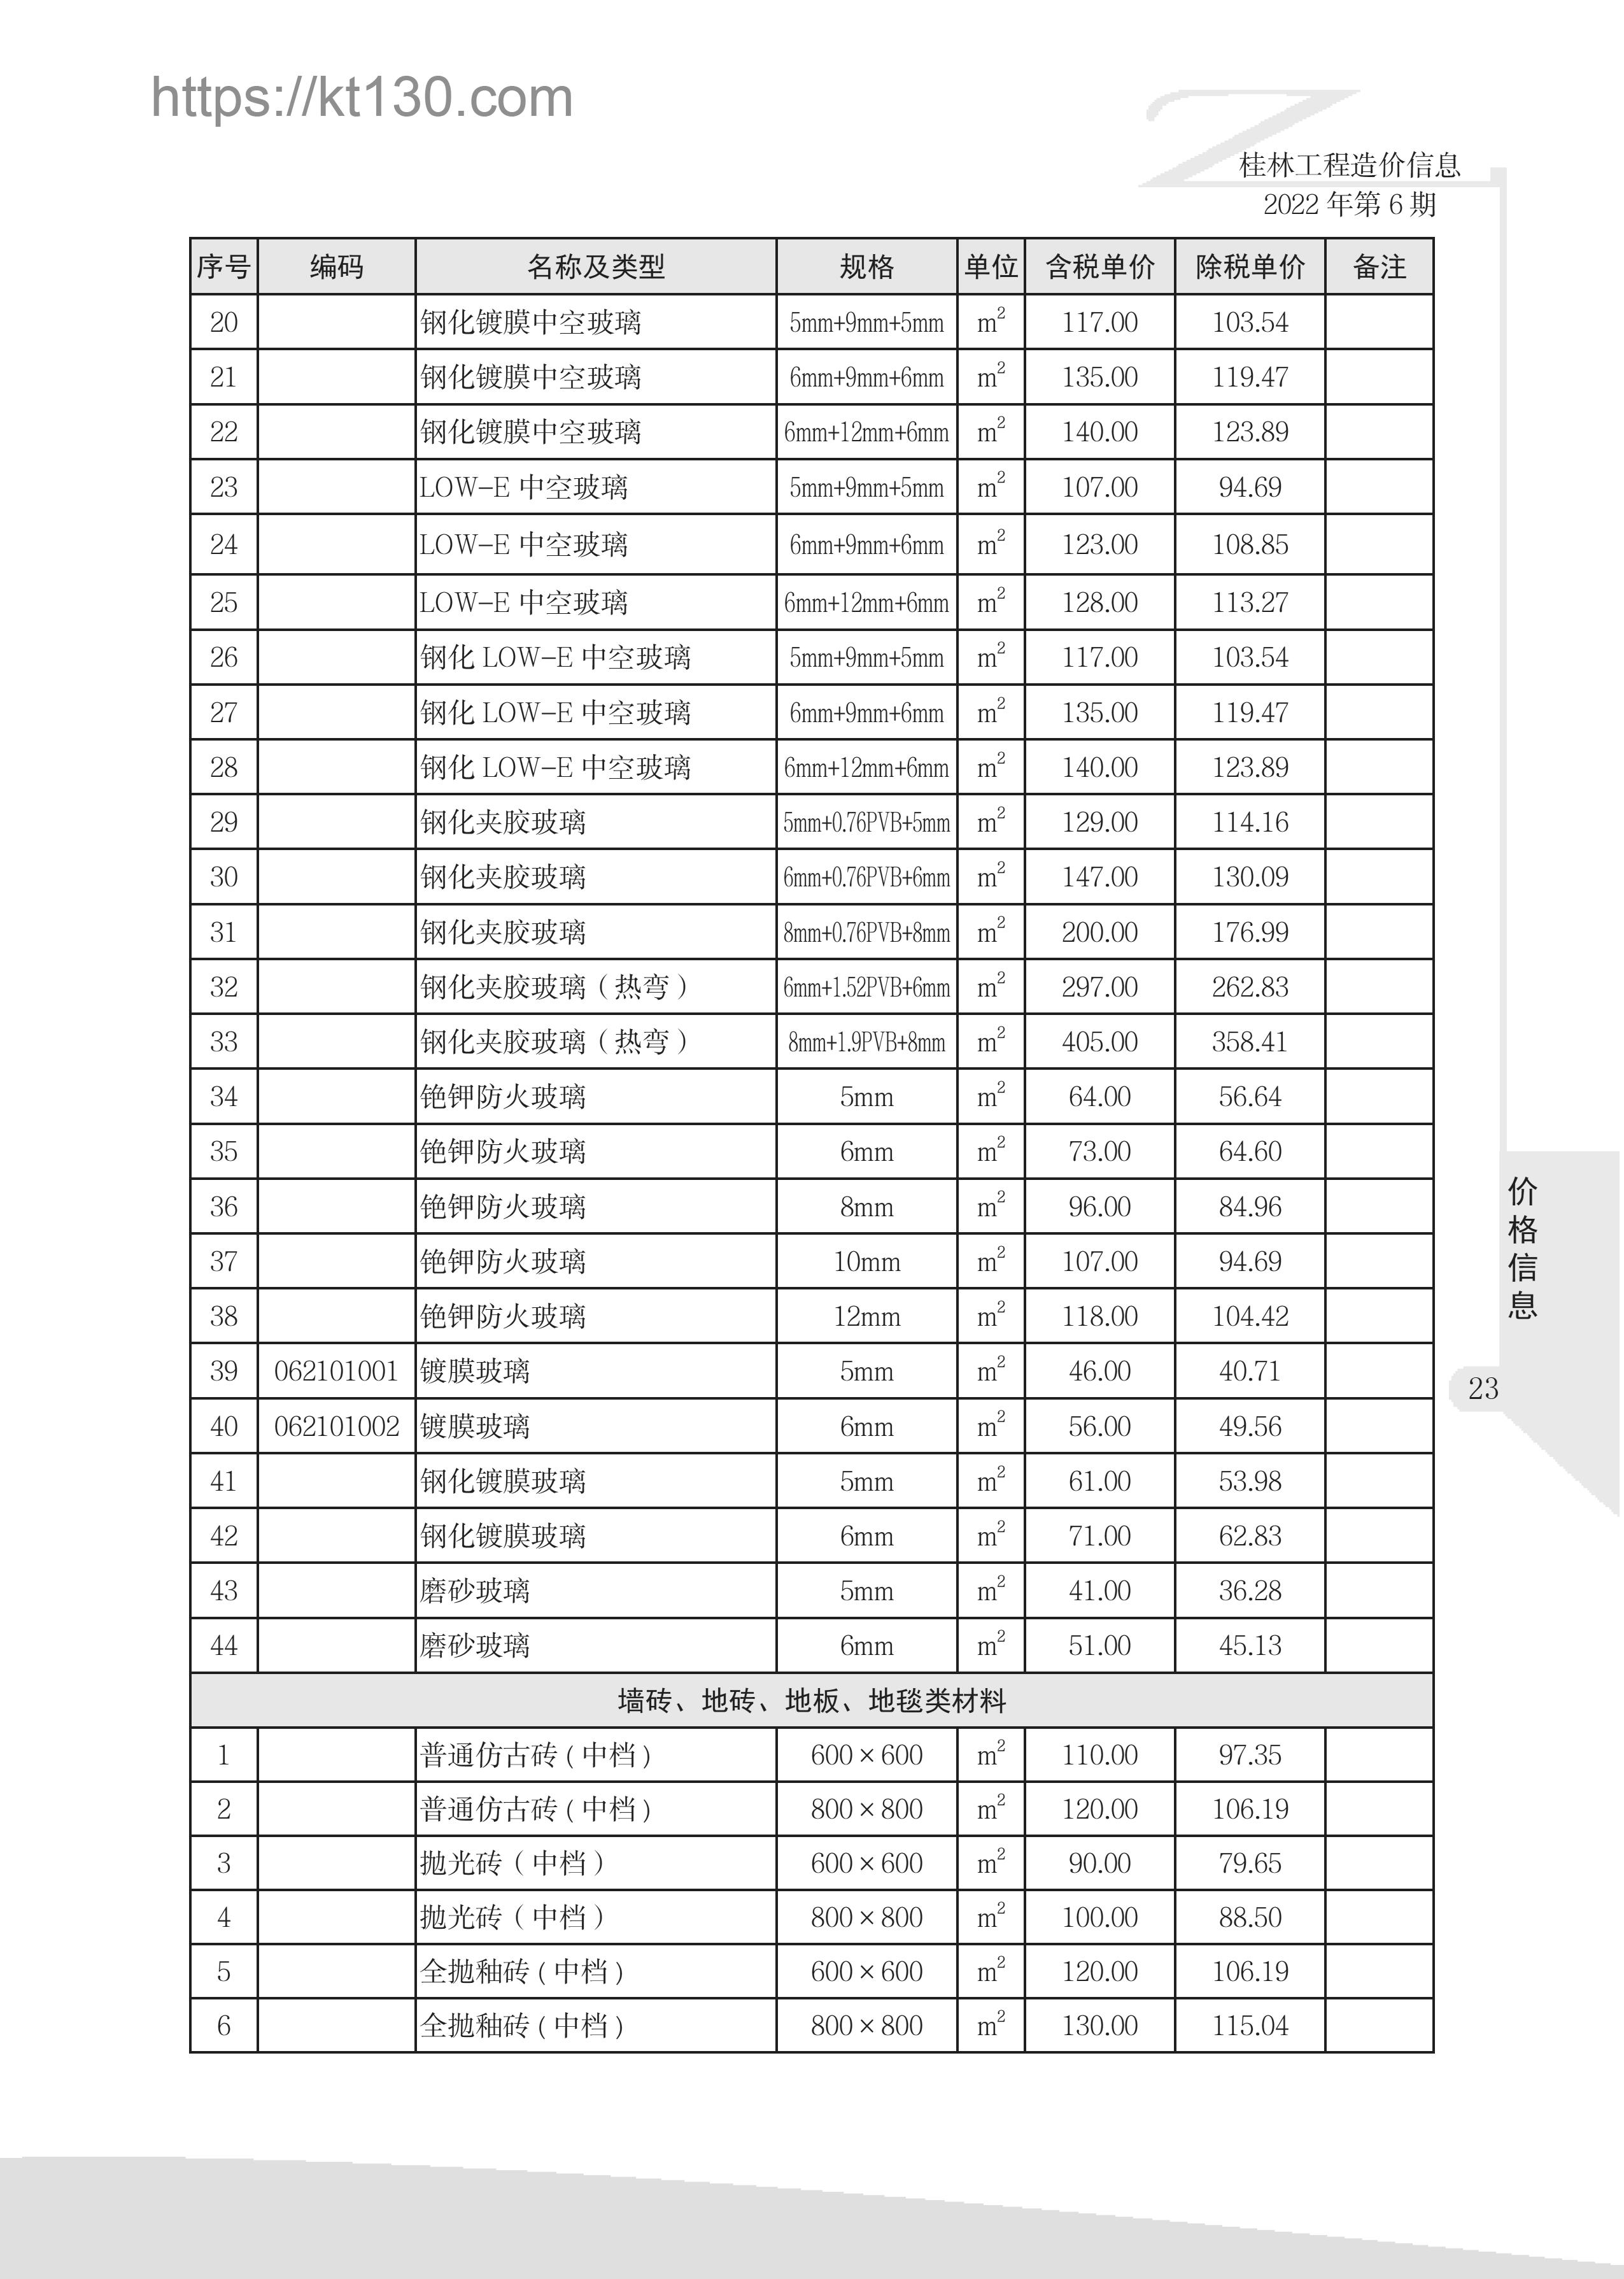 桂林市2022年6月建筑材料价_玻璃及其制品_51900